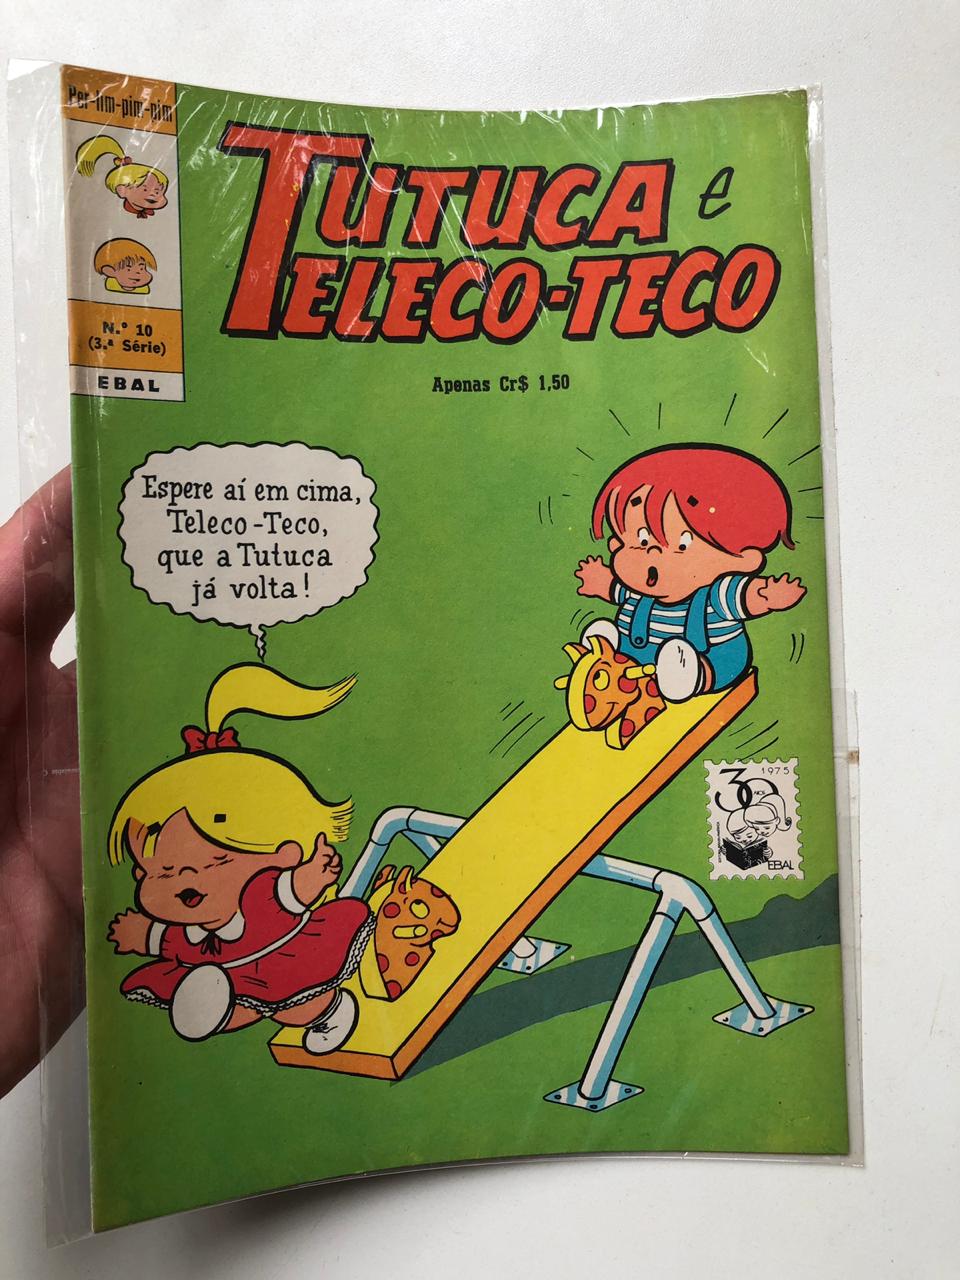 2° lote - Coleção Tutuca e Teleco-Teco – 3ª. Série (Ed. Ebal, formato americano)